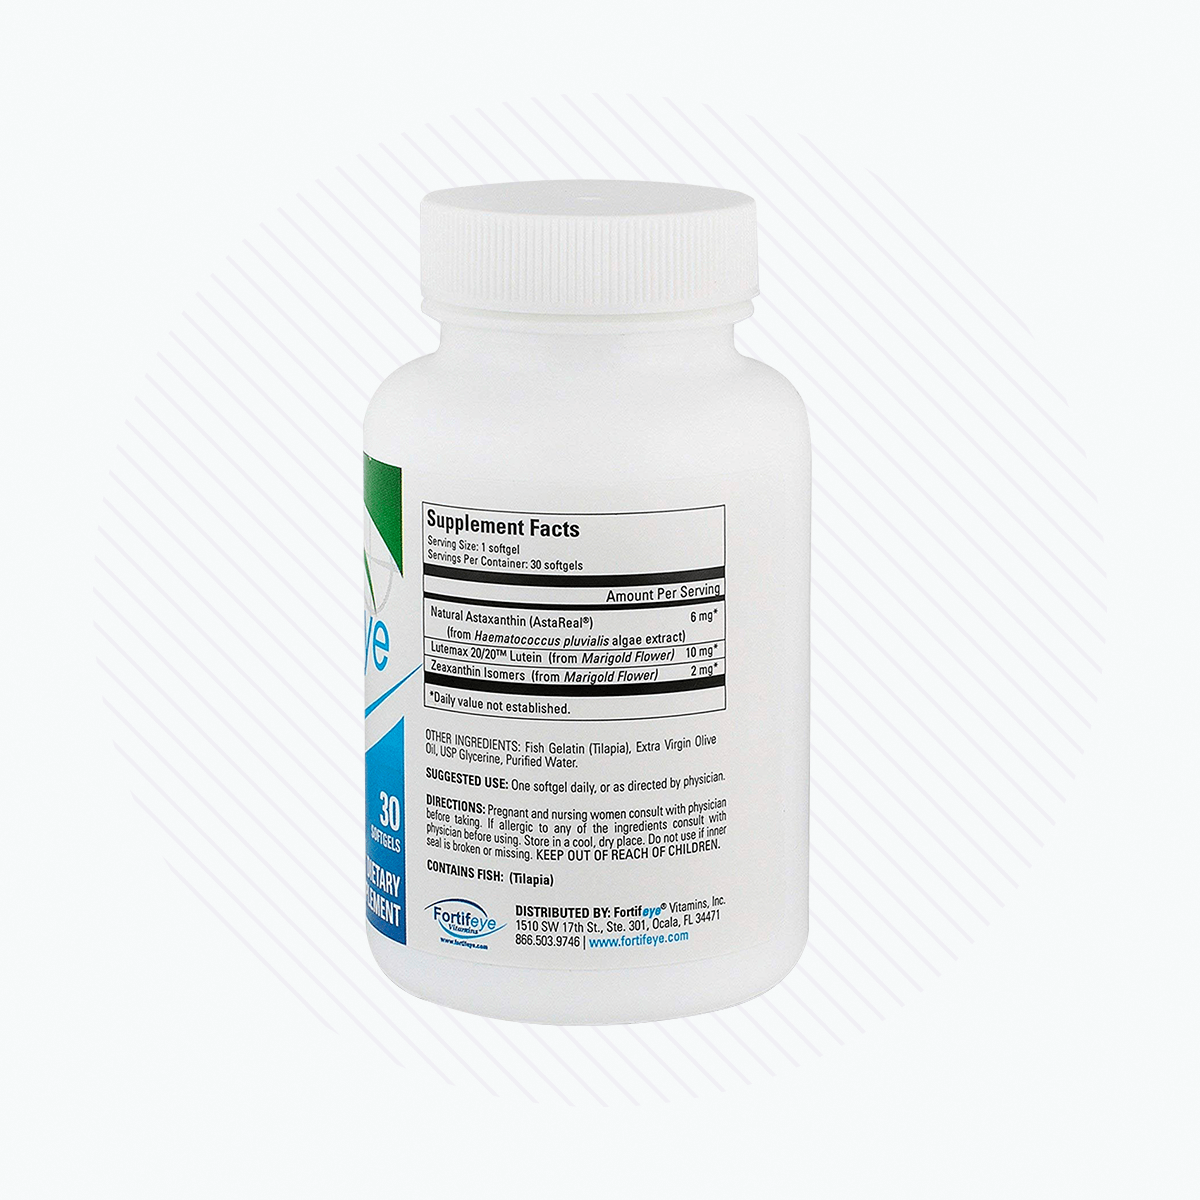 Fortifeye Focus Eye Supplement -Triple Carotenoid (3x Bottles of 30)